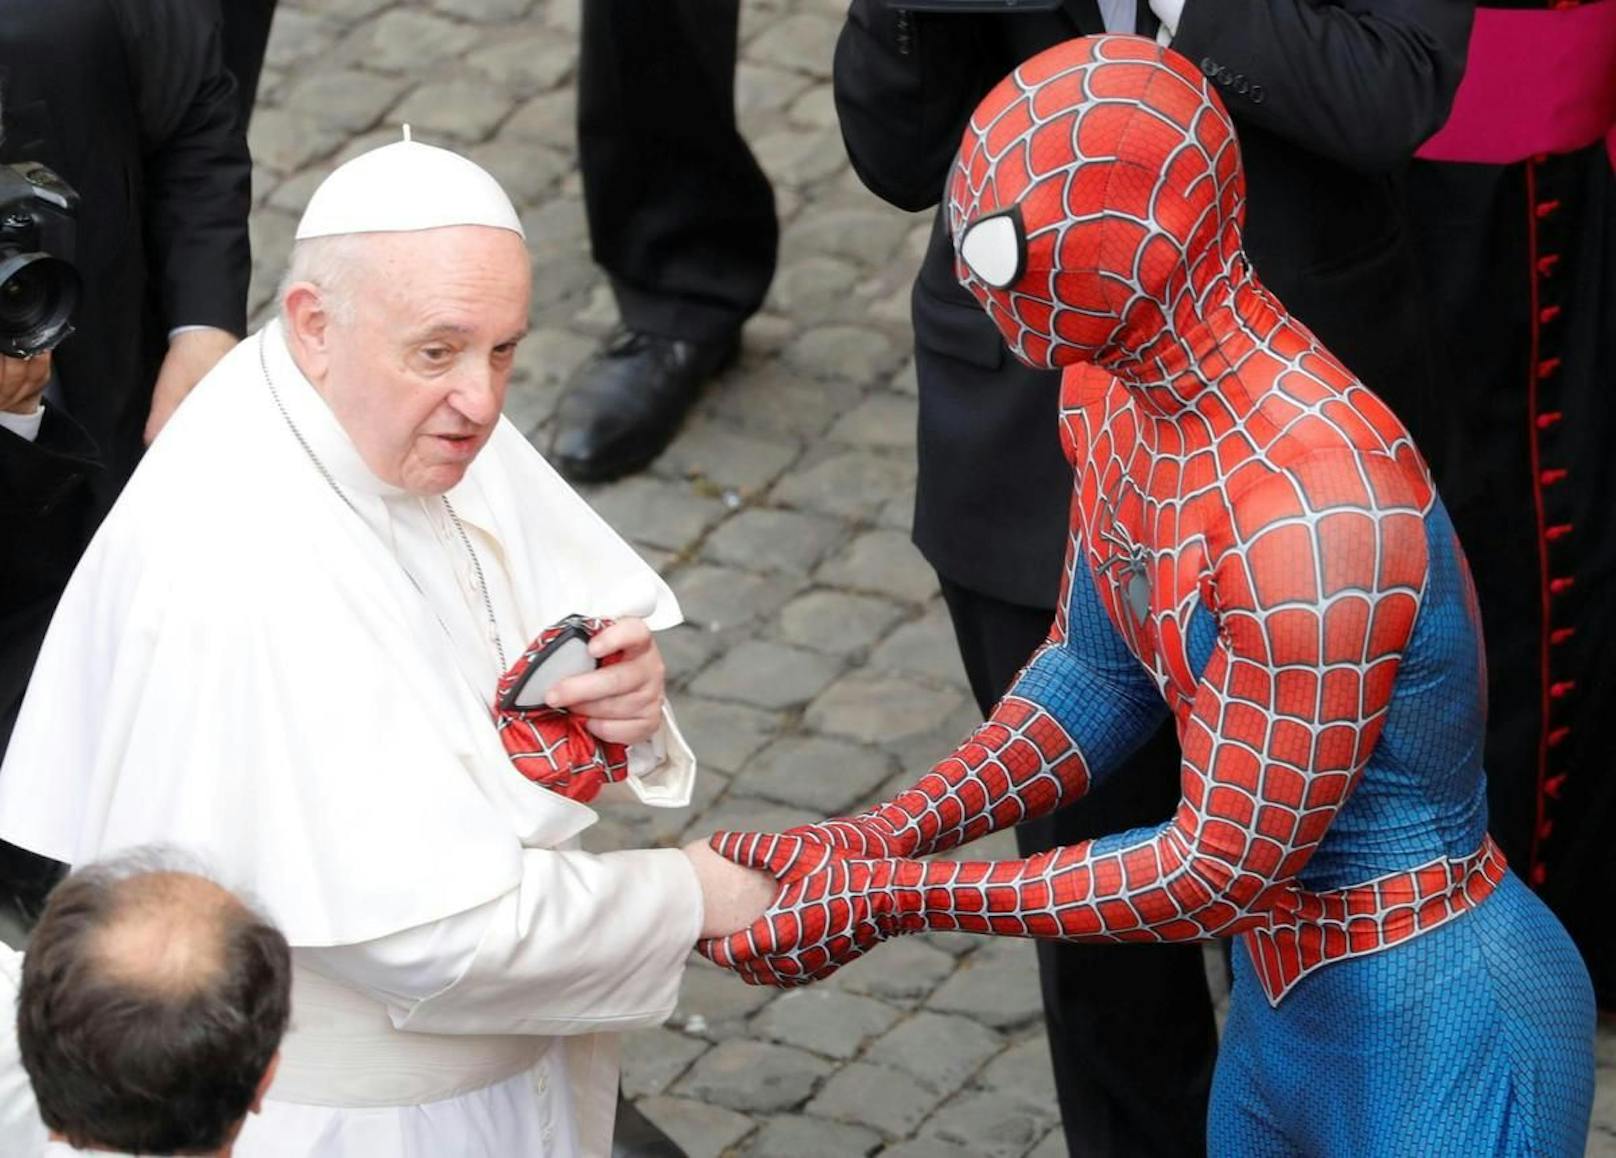 Der Mann schenkte dem Papst eine Superhelden-Maske.